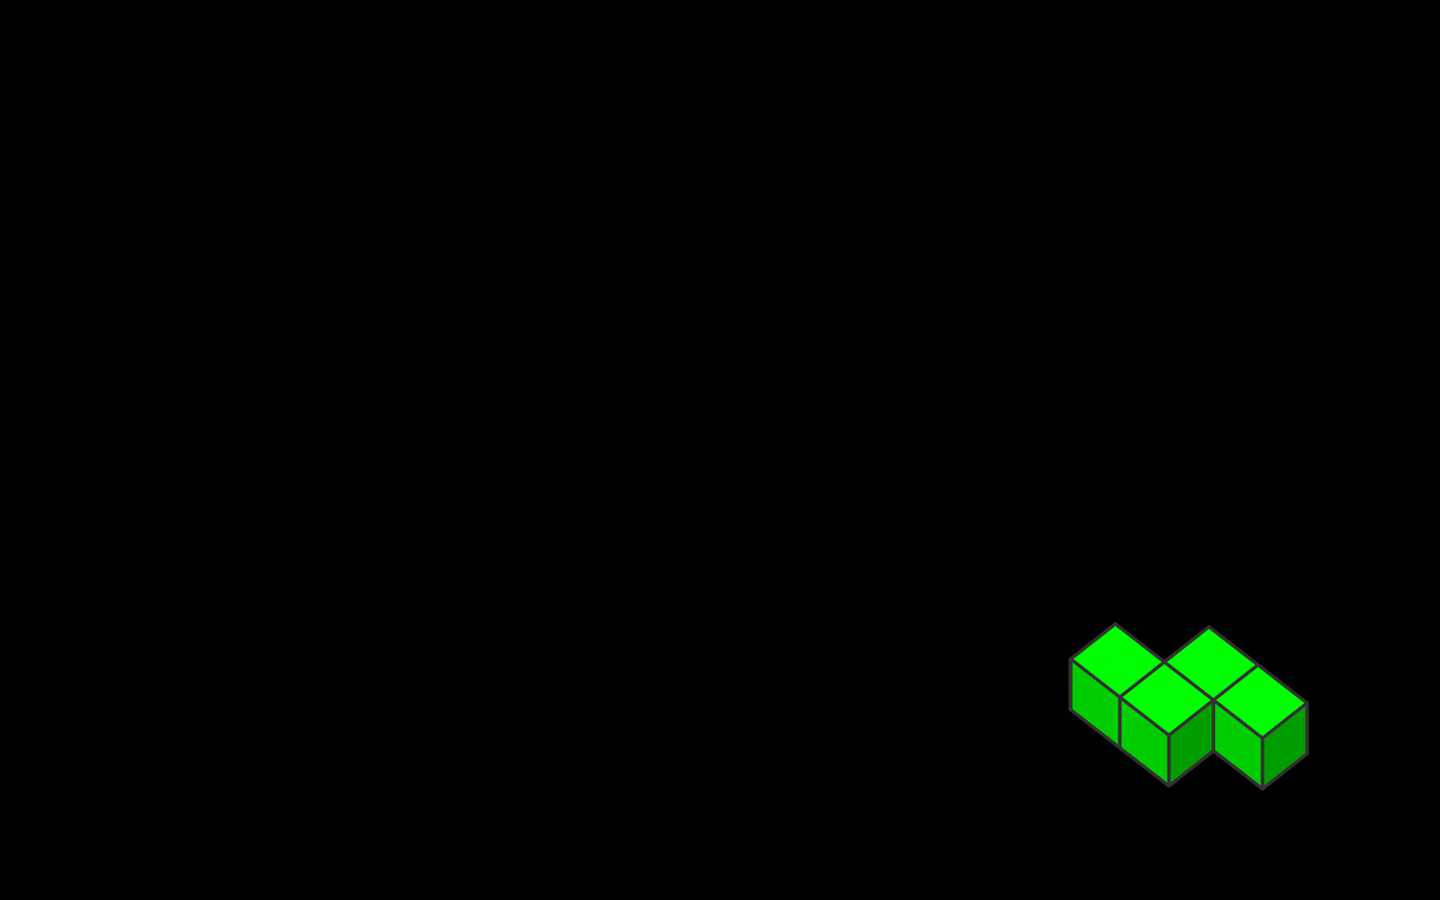 Tetris Picture